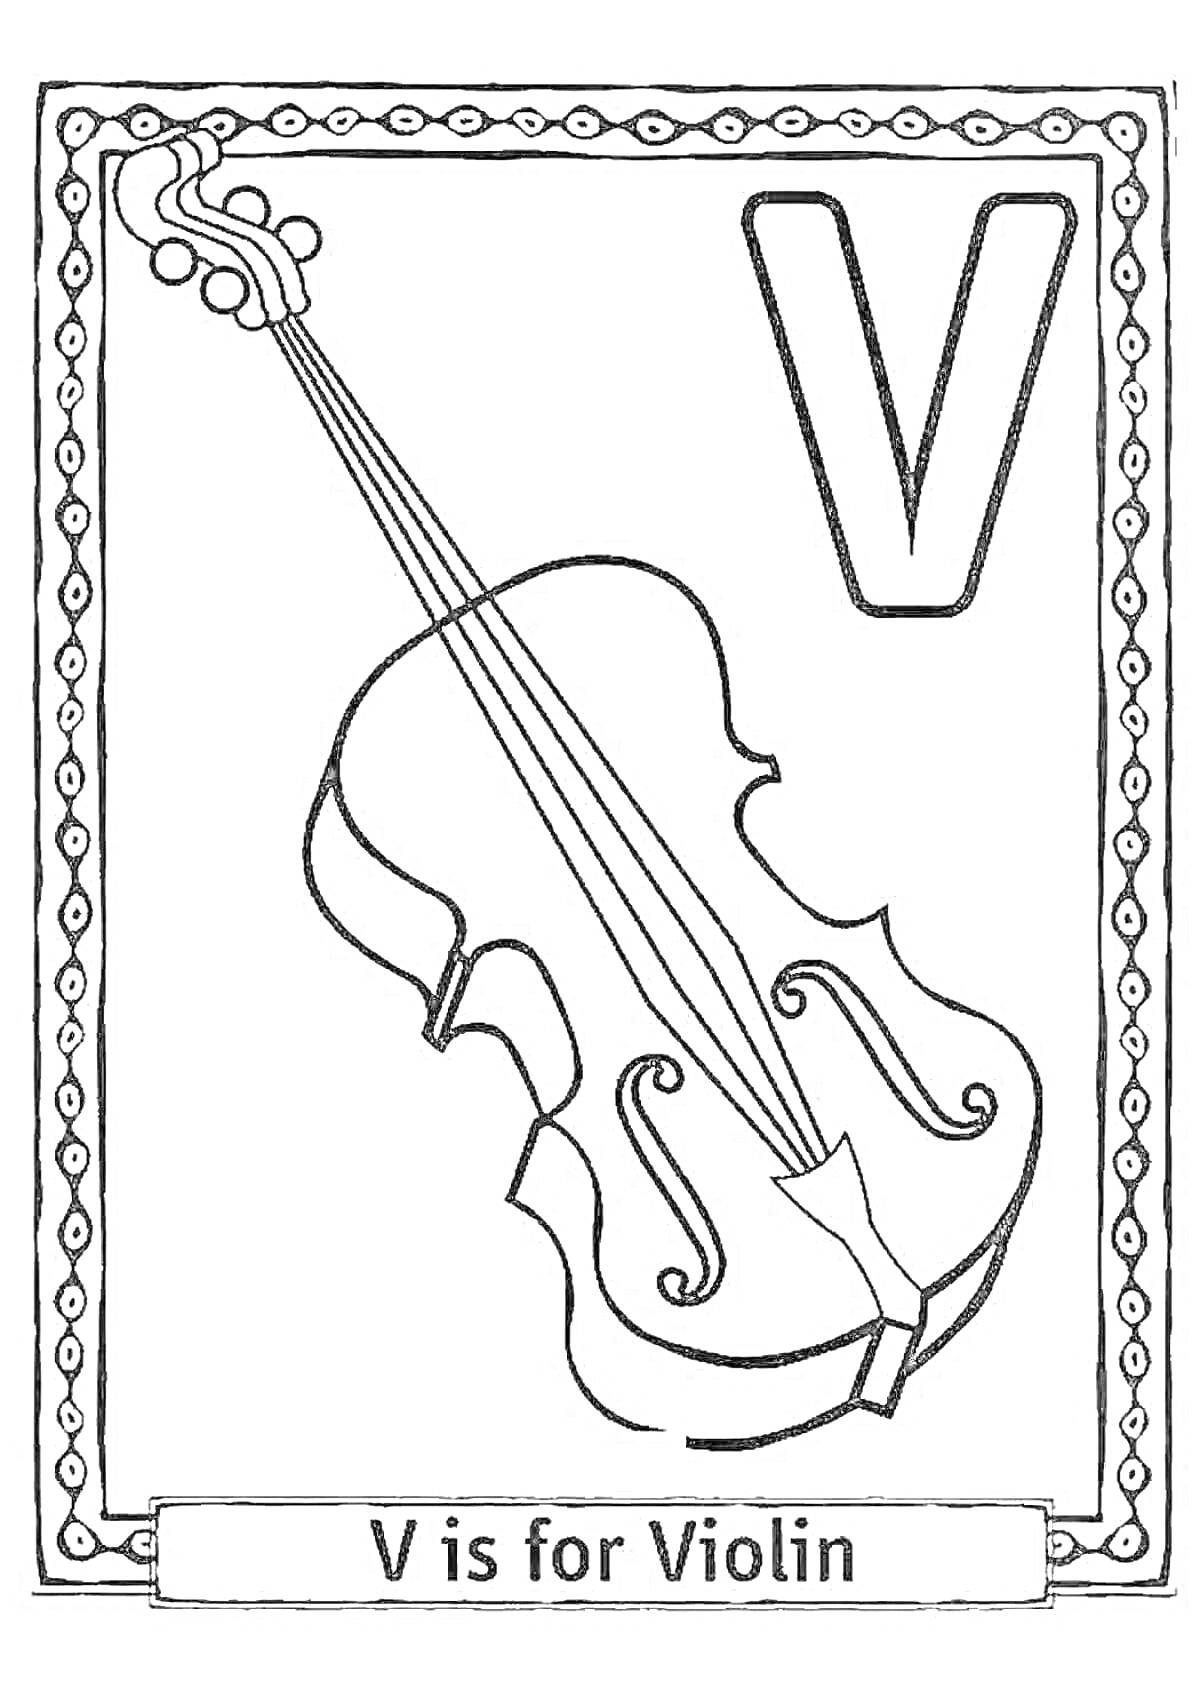 Раскраска Скрипка с буквой V и надписью «V is for Violin»